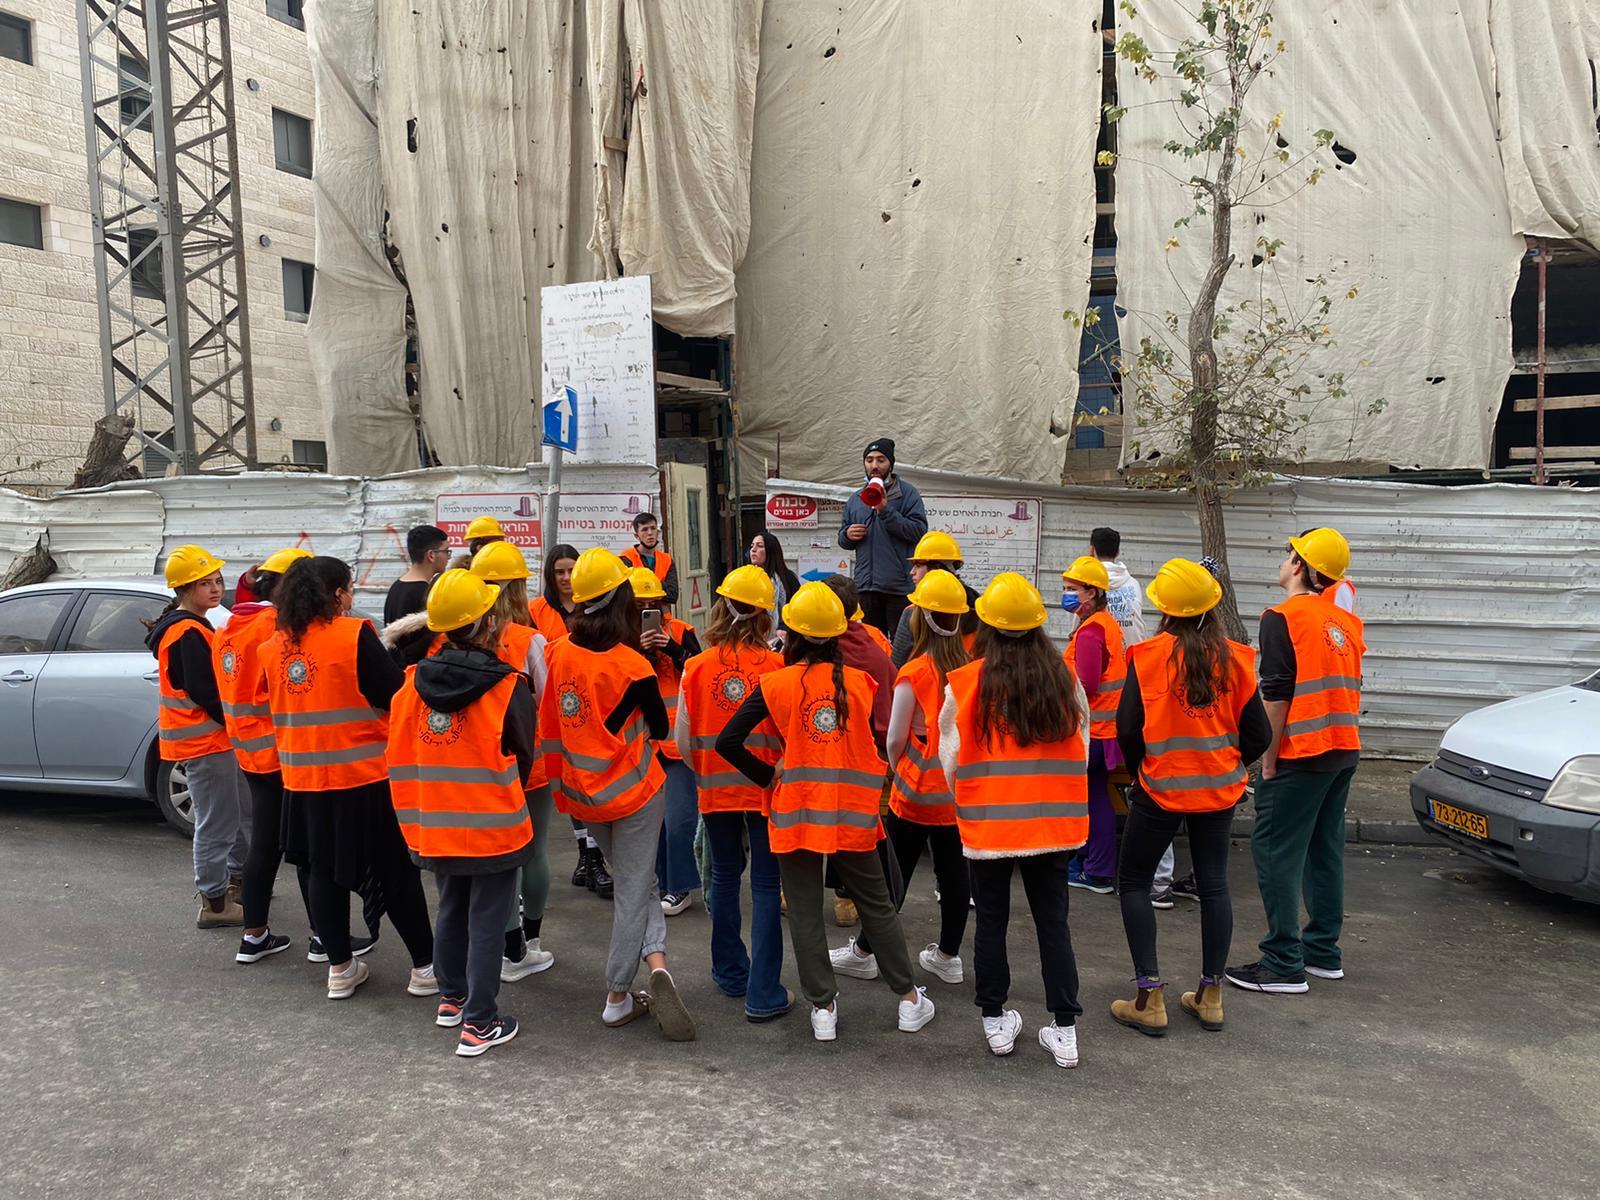 דואגים לבטיחותם: תלמידי תיכון "קשת" ופעילים חברתיים ביוזמה משותפת למען פועלי הבנייה בירושלים